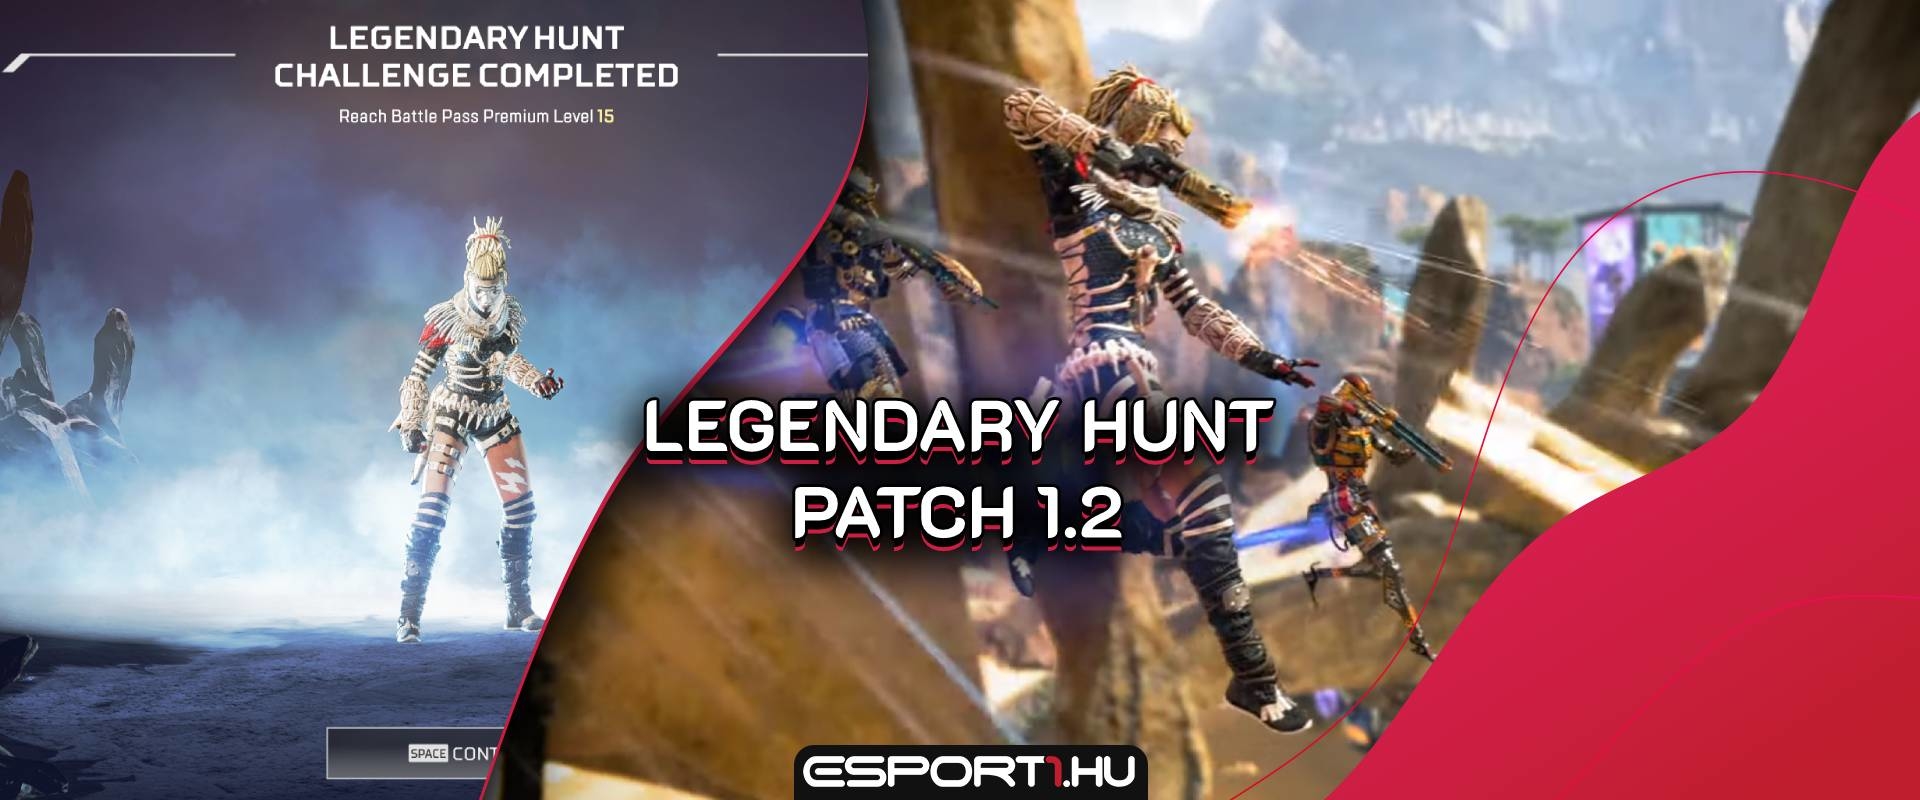 Vadász leszel, vagy a vad? Befutott a Legendary Hunt és az 1.2-es patch